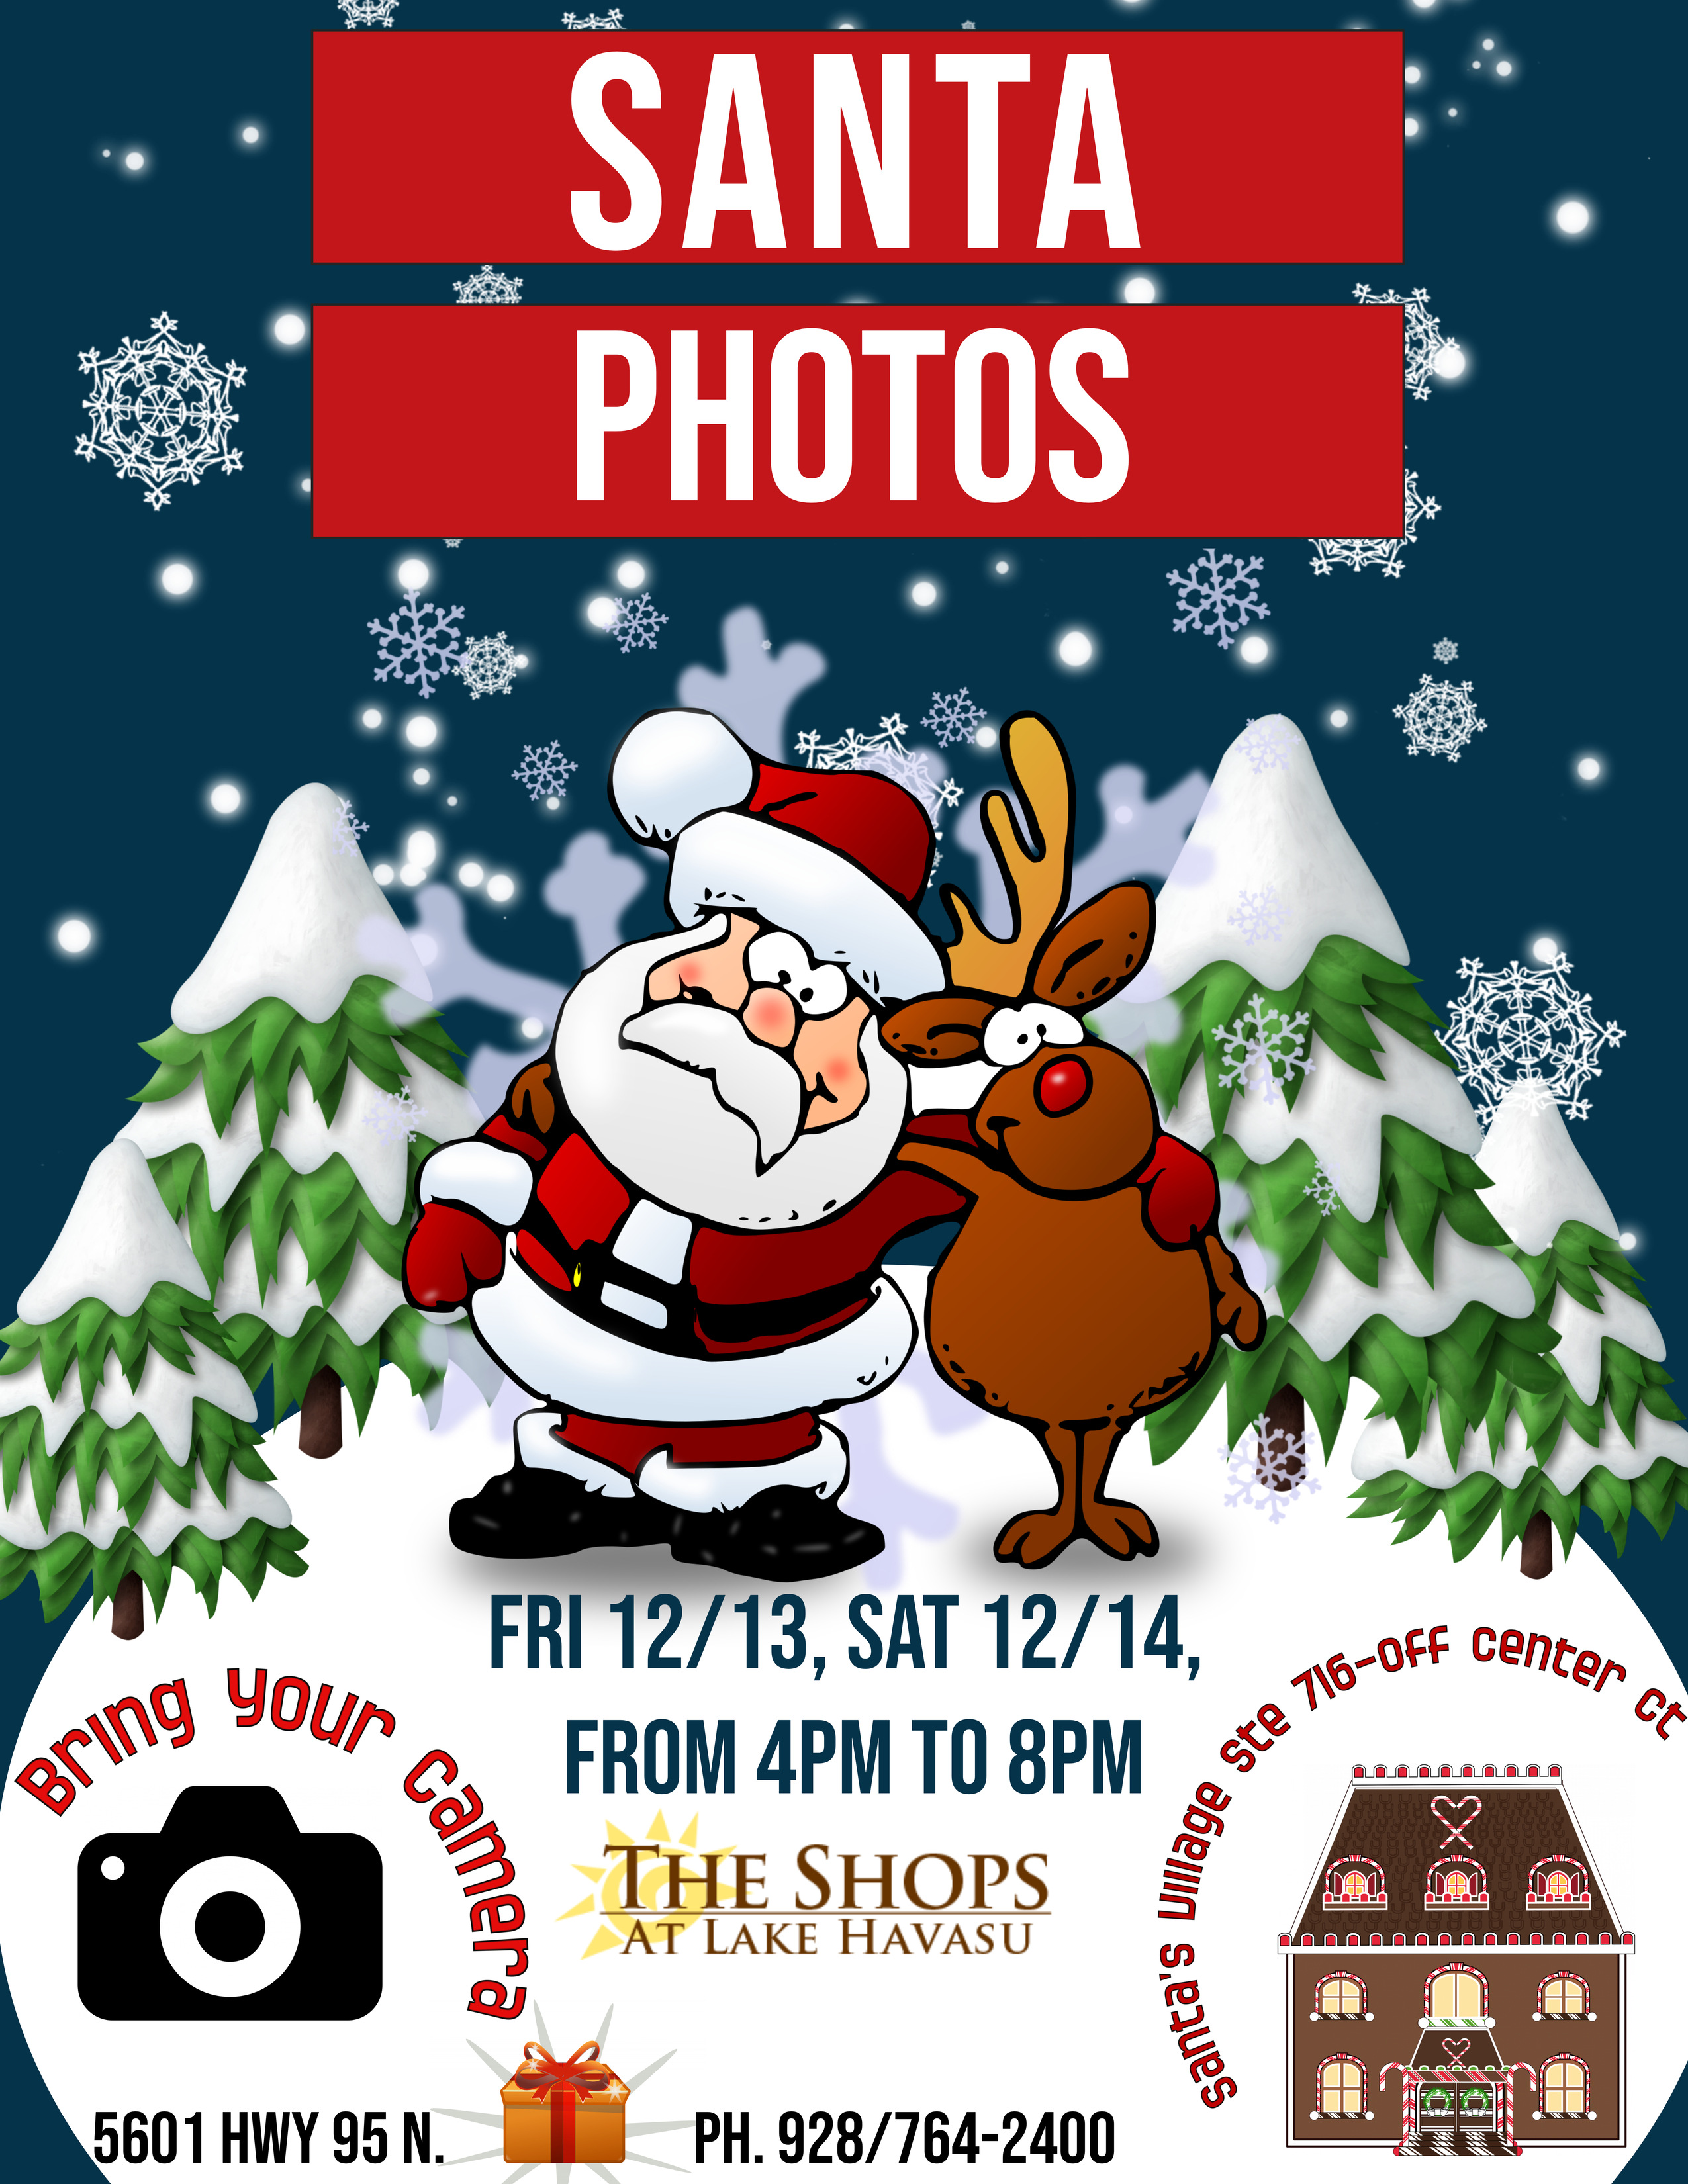 Santa Photos at The Shops at Lake Havasu